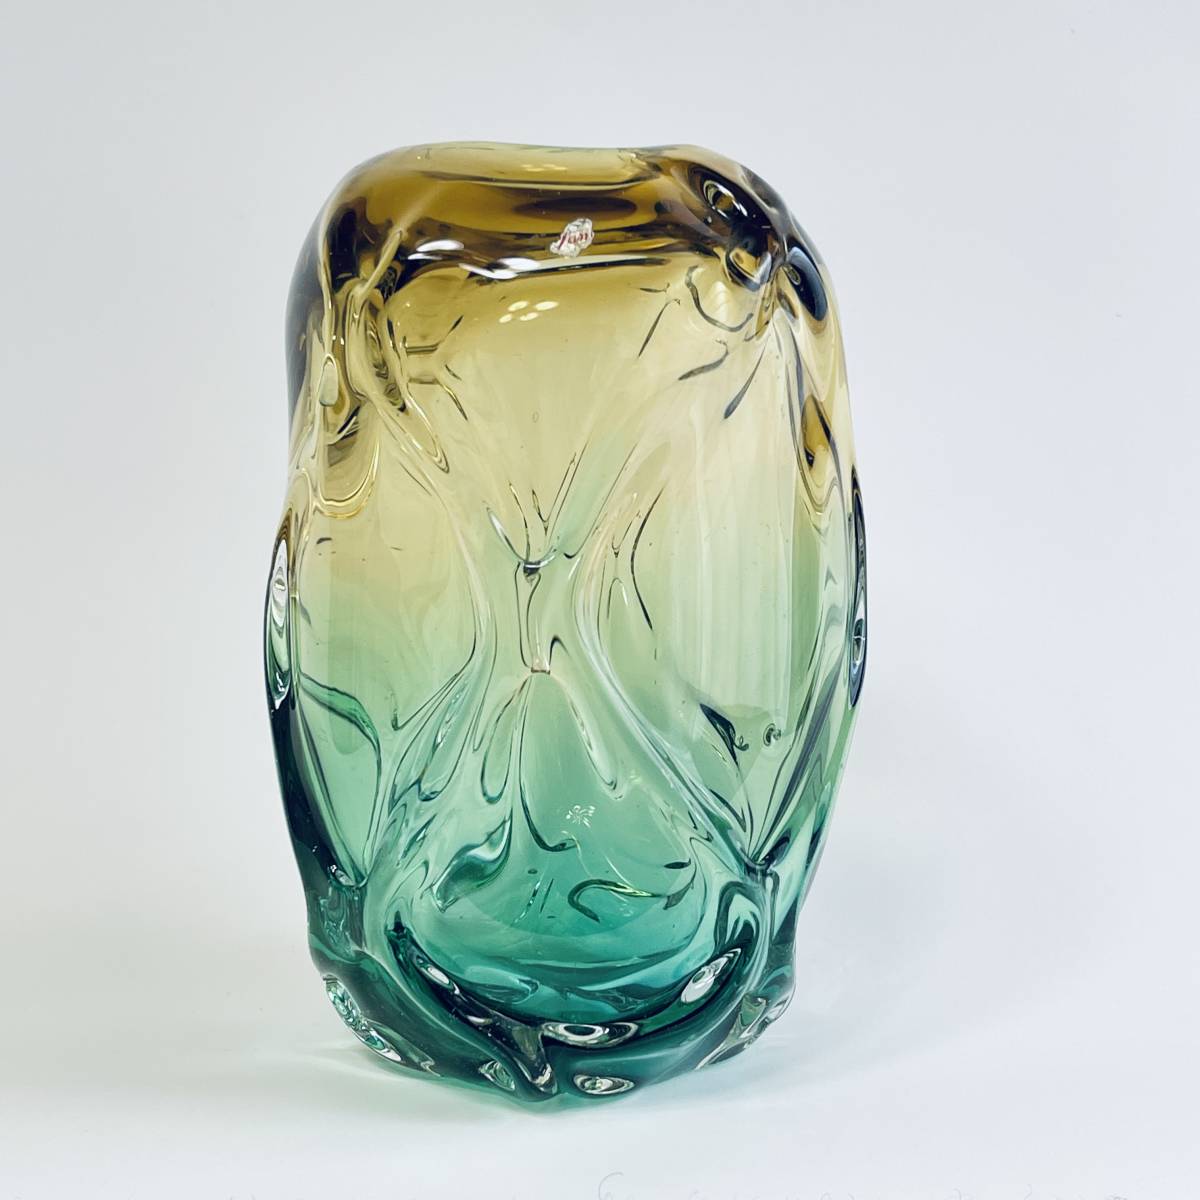 アートガラス 花瓶 A5 イエロー×グリーン グラデーション 工芸ガラス ハンドメイド フラワーベース 花器, 工芸品, ガラス, 工芸ガラス